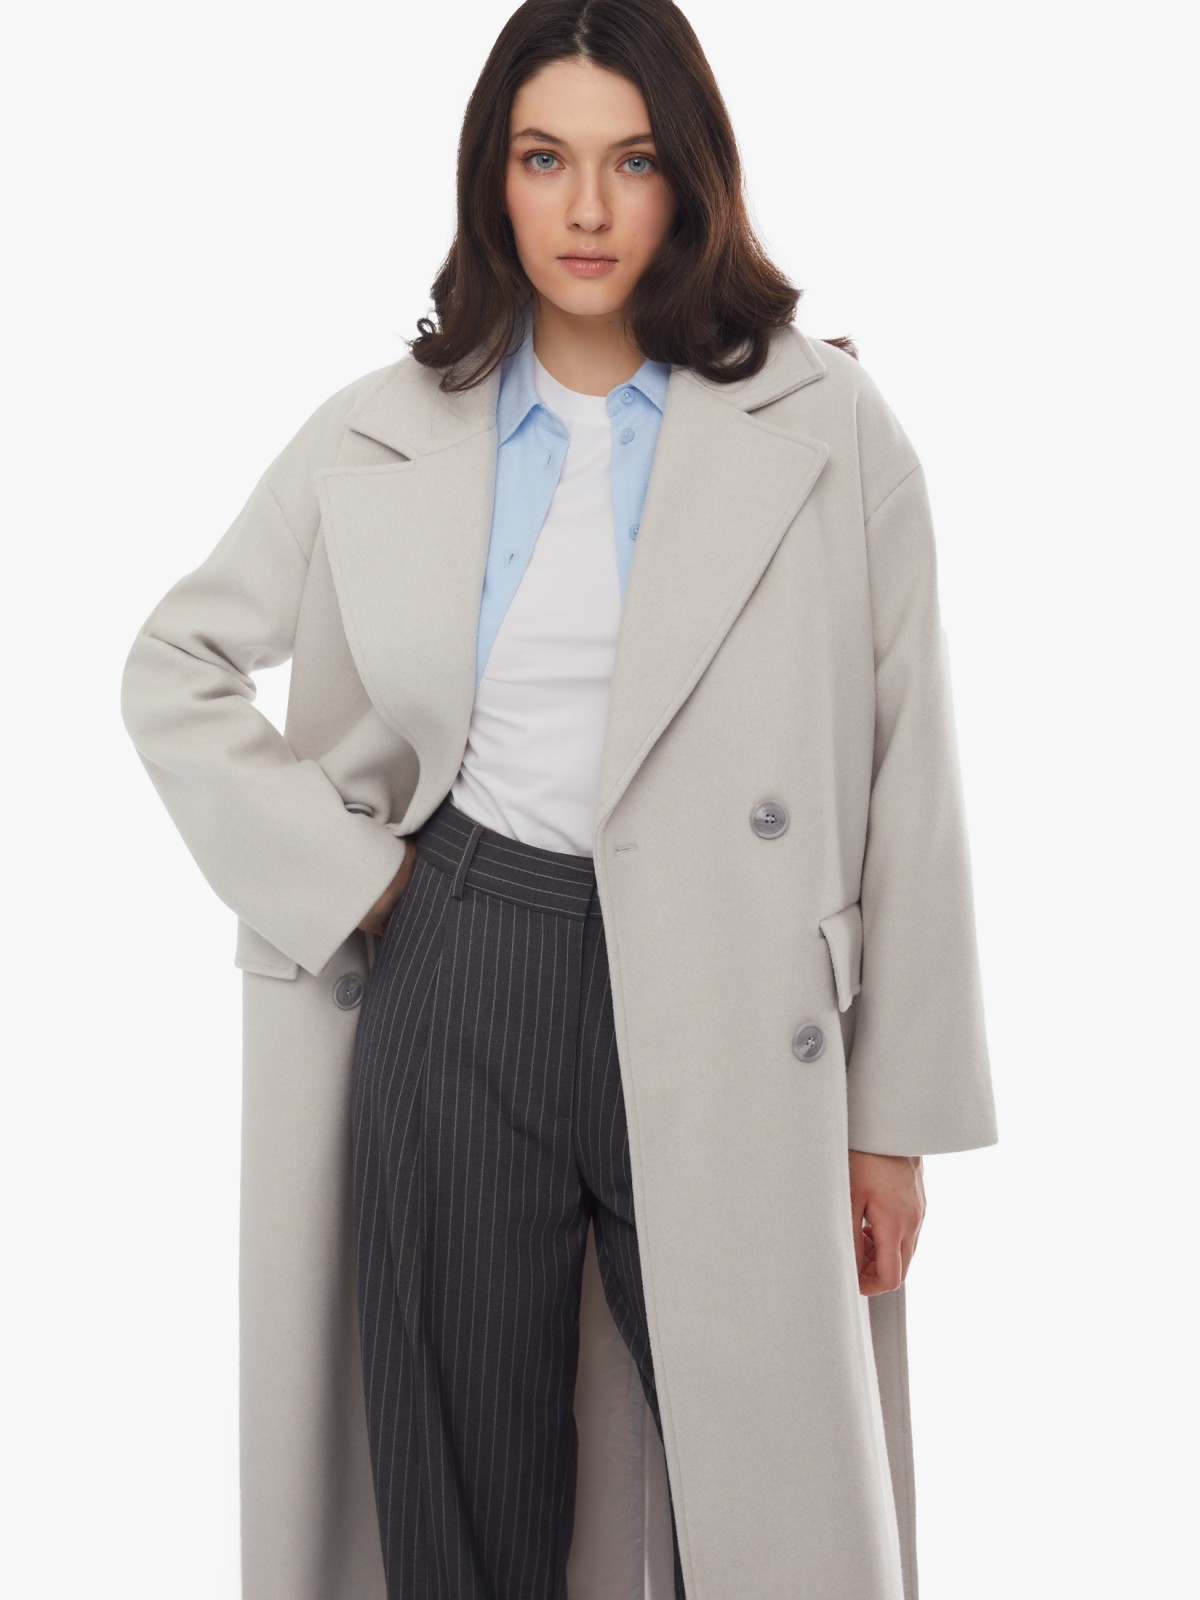 Длинное пальто оверсайз силуэта без утеплителя на пуговицах с поясом zolla 024125857064, цвет светло-серый, размер XS - фото 2